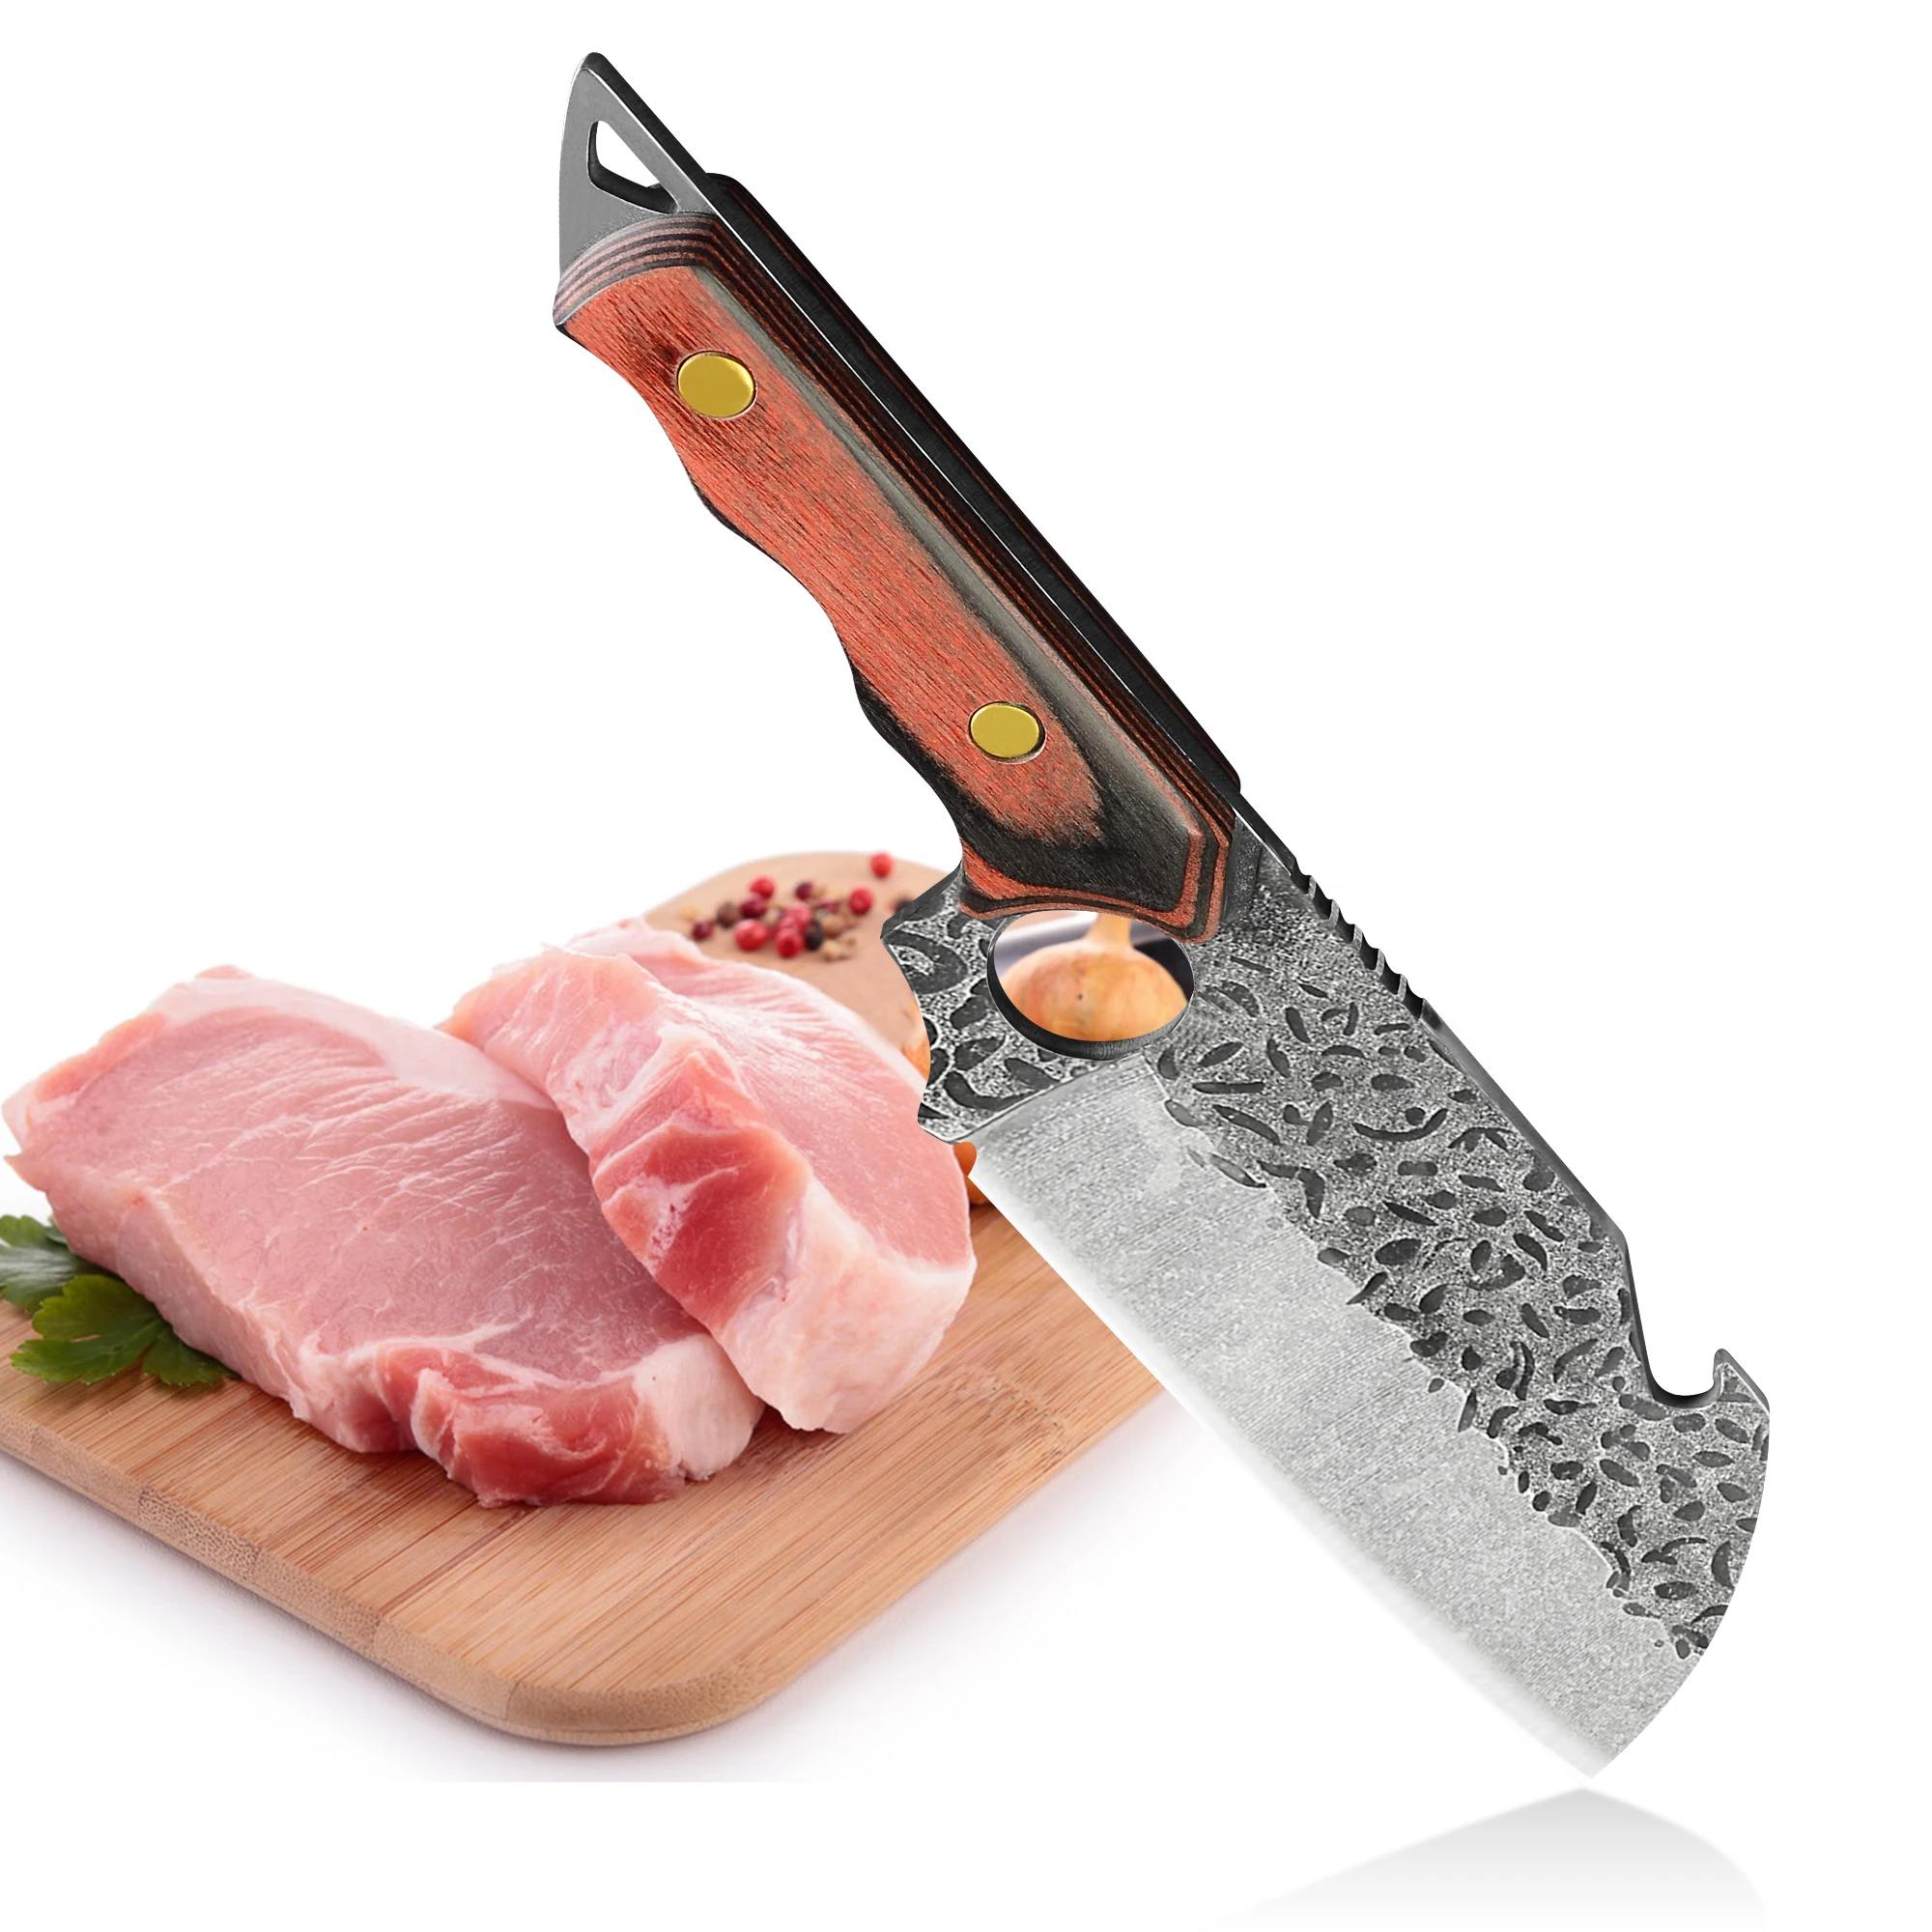 Мясницкий нож. Ножи Мясницкие профессиональные. Мясницкий нож кованый. Нож Мясницкий широкий.